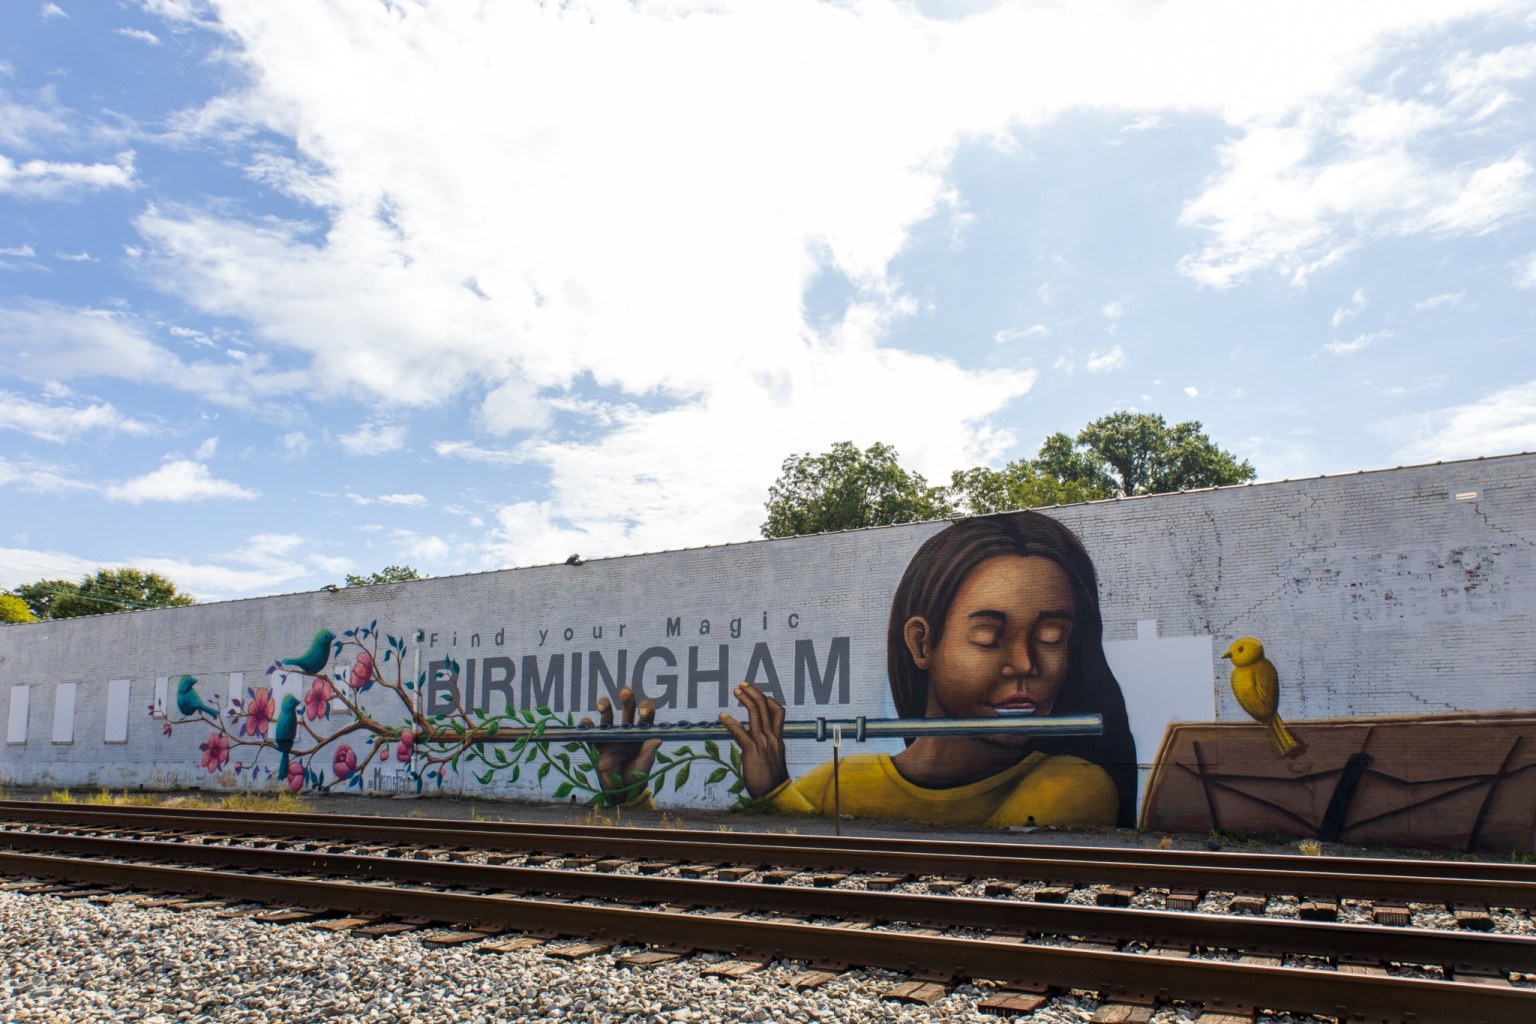 Birmingham's murals